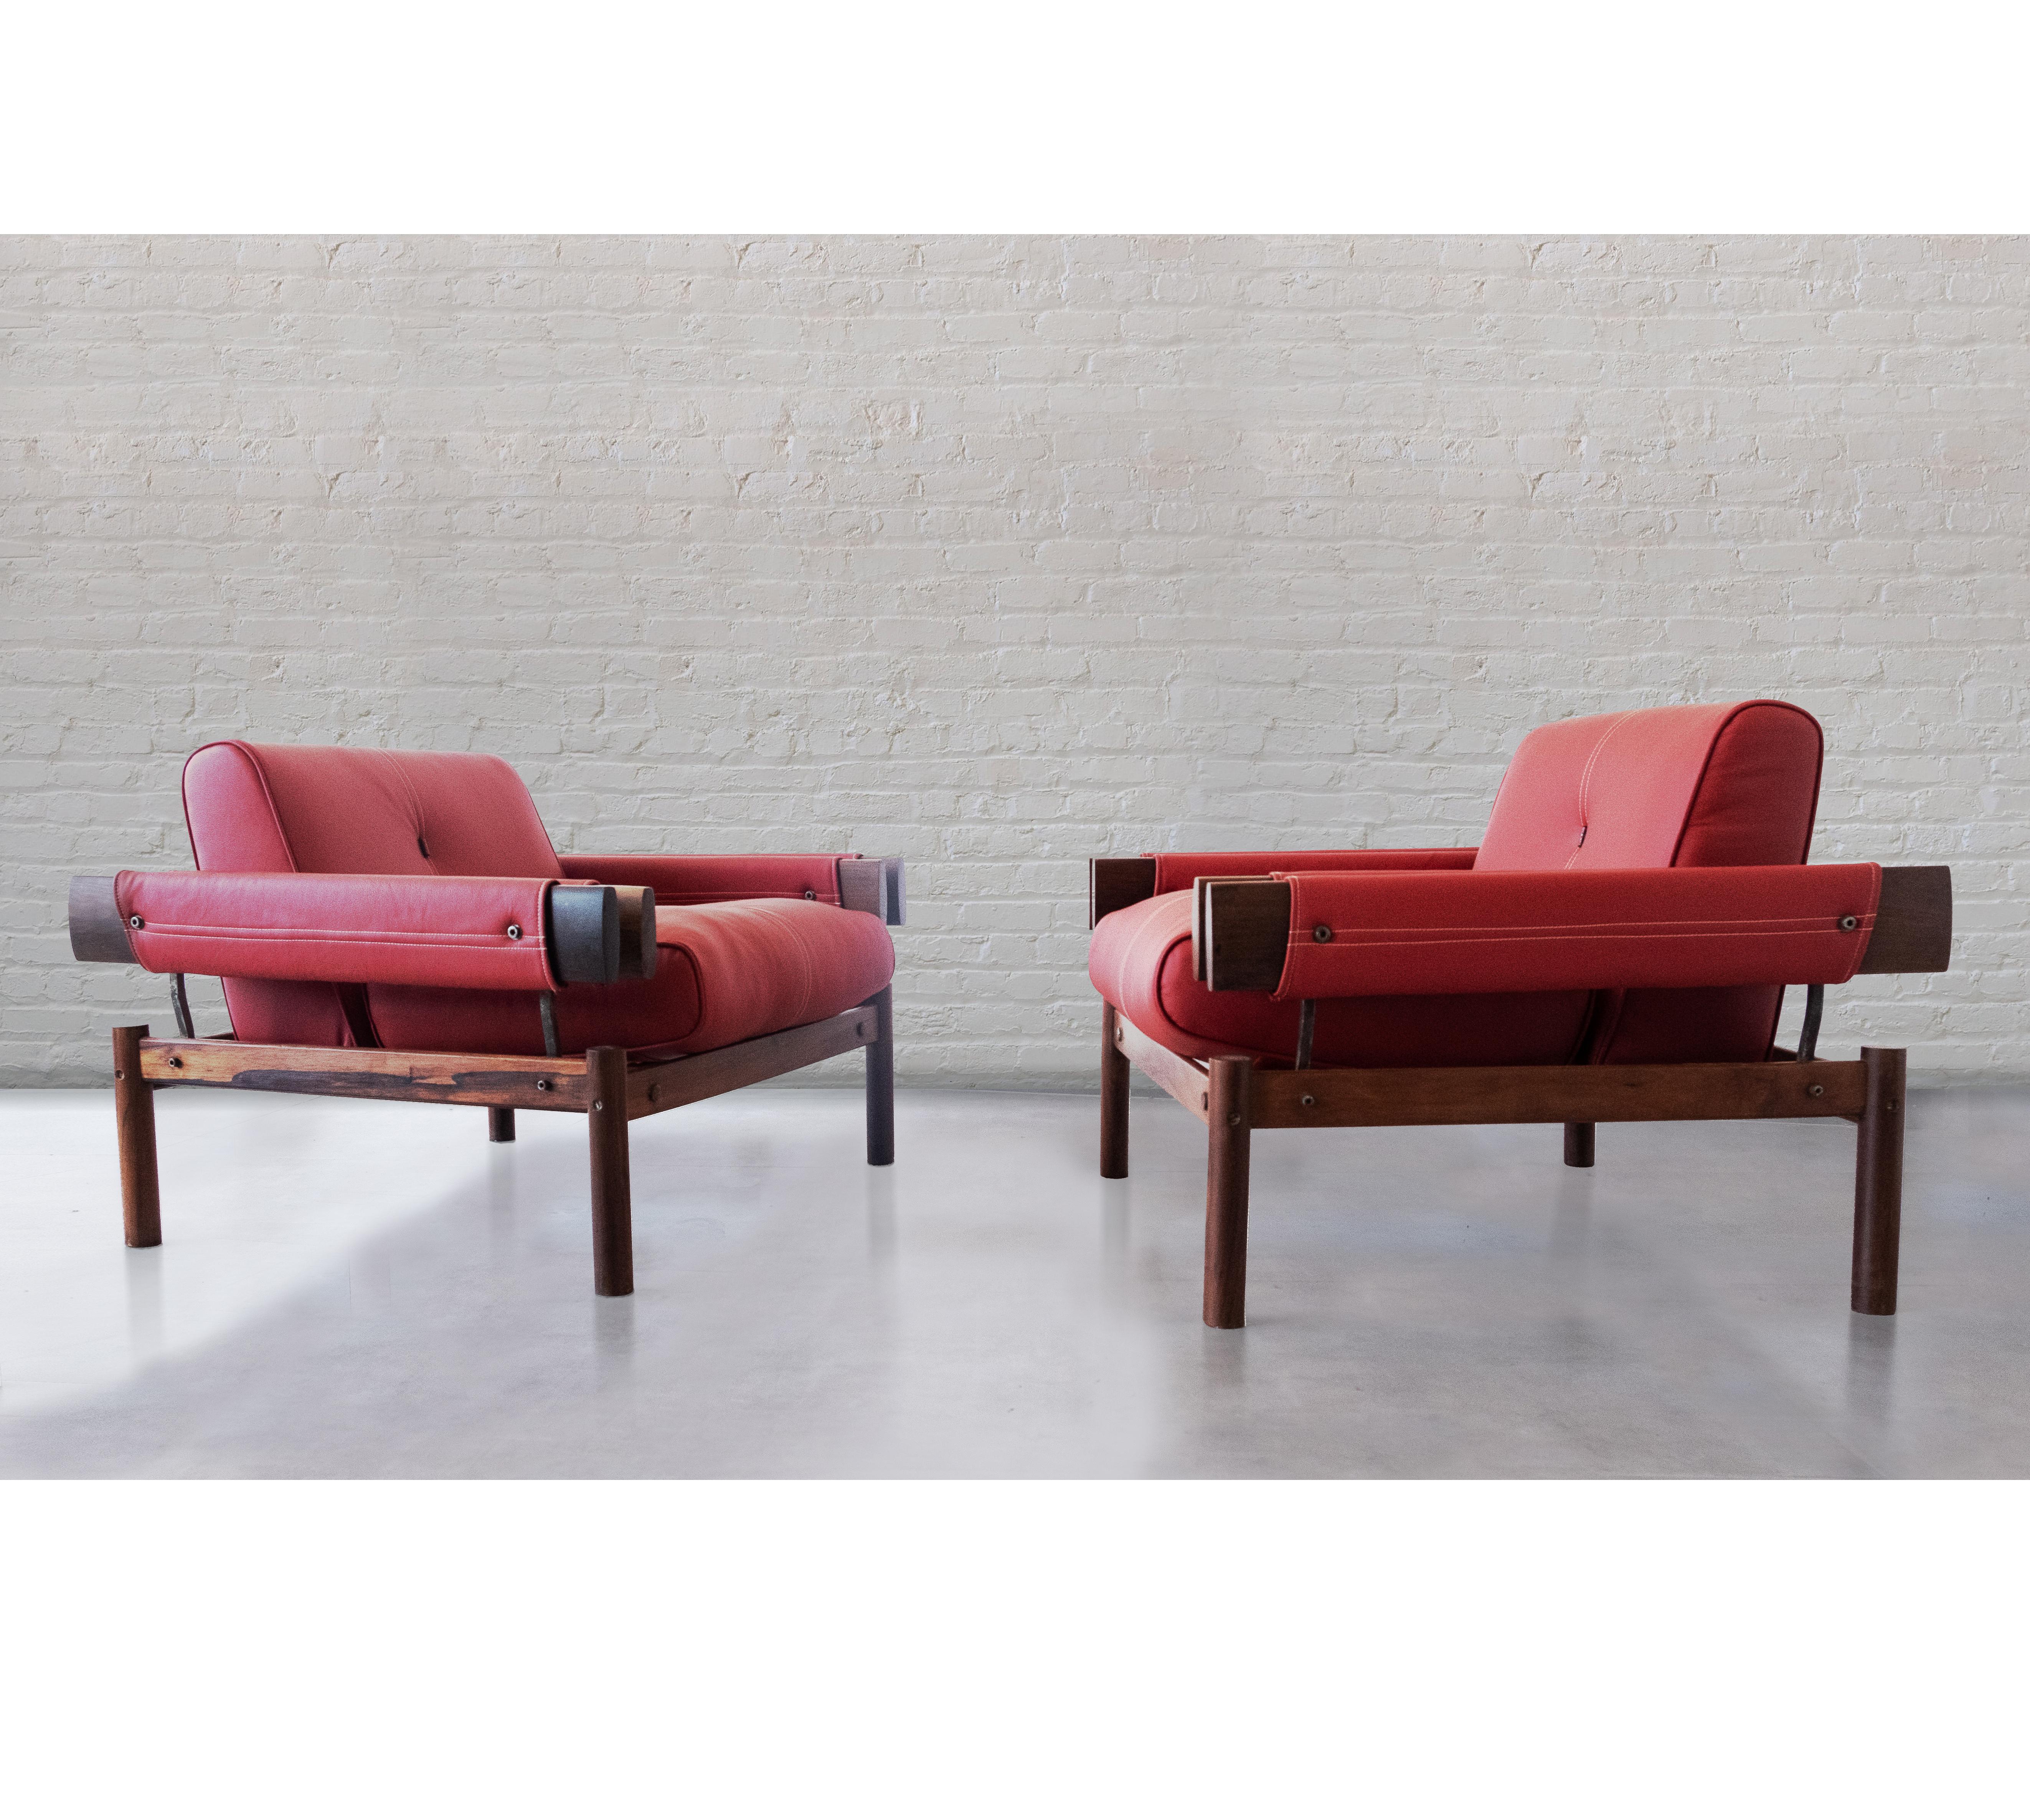 Une paire de magnifiques fauteuils MP19, conçus et fabriqués par Percival Lafer. Brésil c. C. 1967.

Malgré la grande section des pièces de bois et leur solidité, ce design donne une impression de légèreté, car les sièges et les accoudoirs semblent